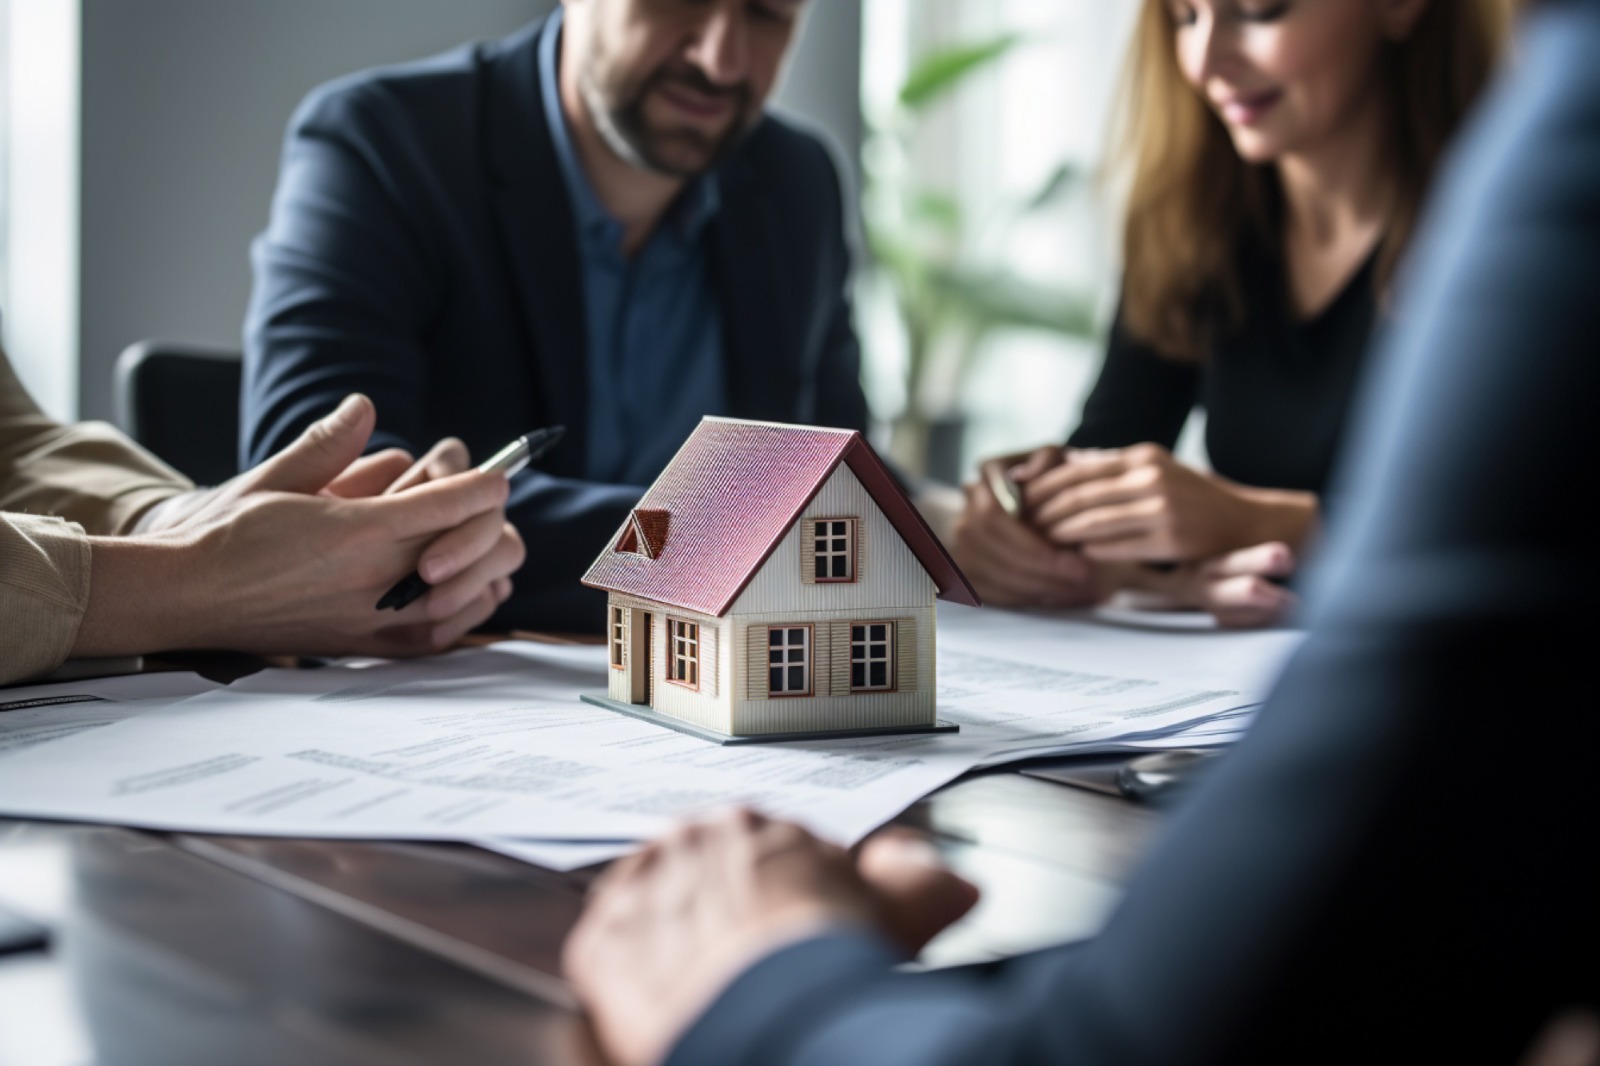 Três profissionais não identificados sentados à mesa durante uma reunião imobiliária com um modelo de casa no centro, representando o tema